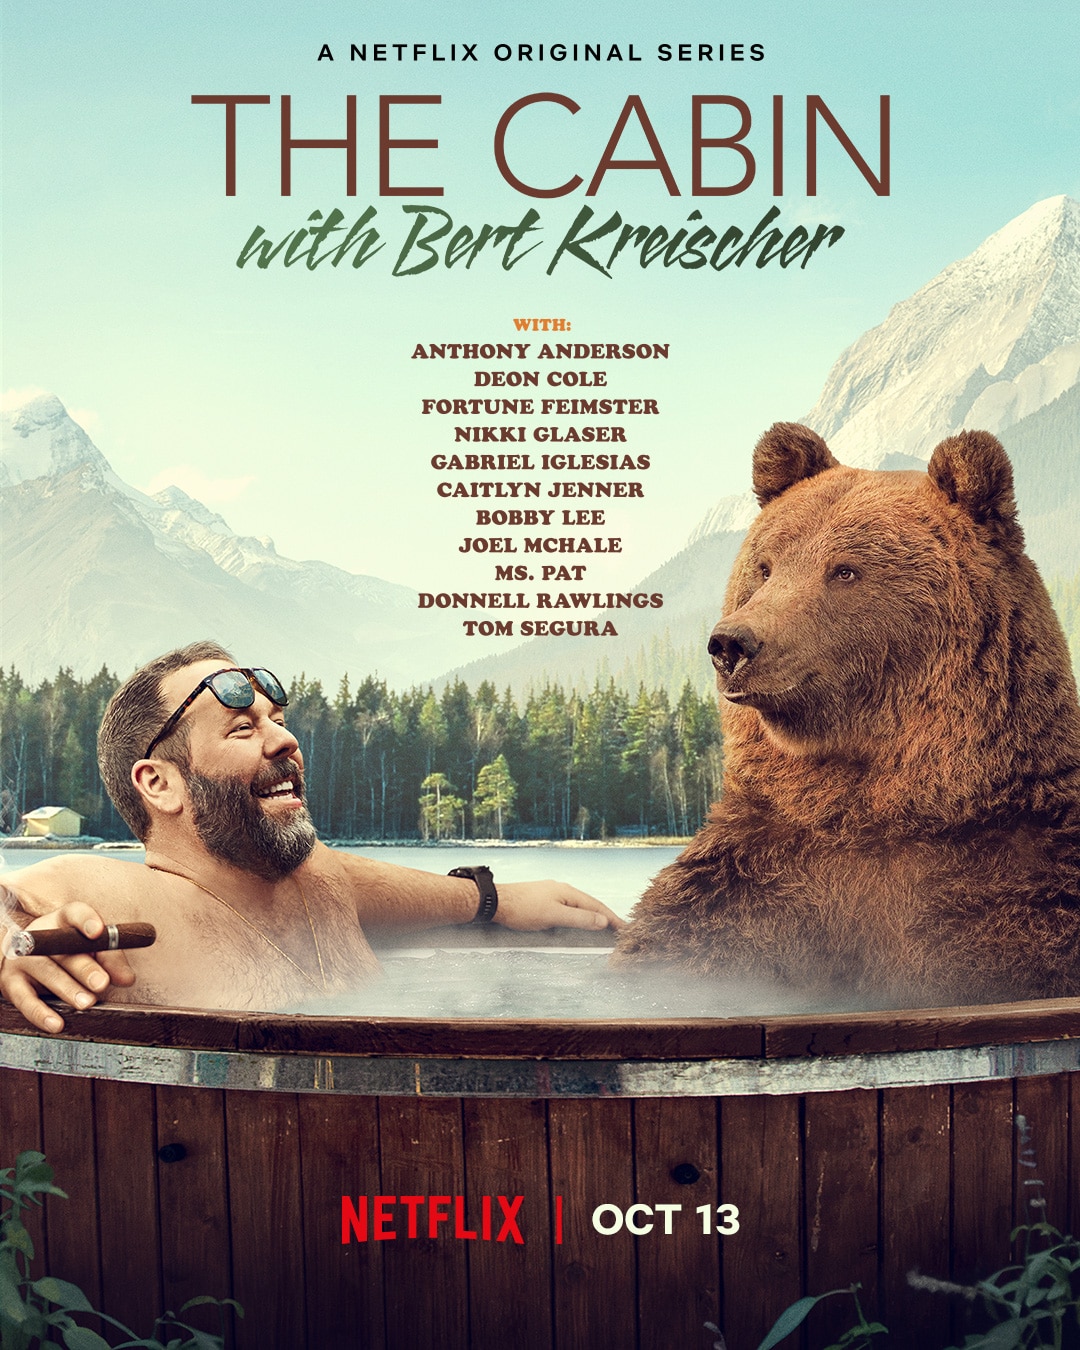 🎬 The Cabin with Bert Kreischer [TRAILER] Coming to Netflix October 13, 2020 3